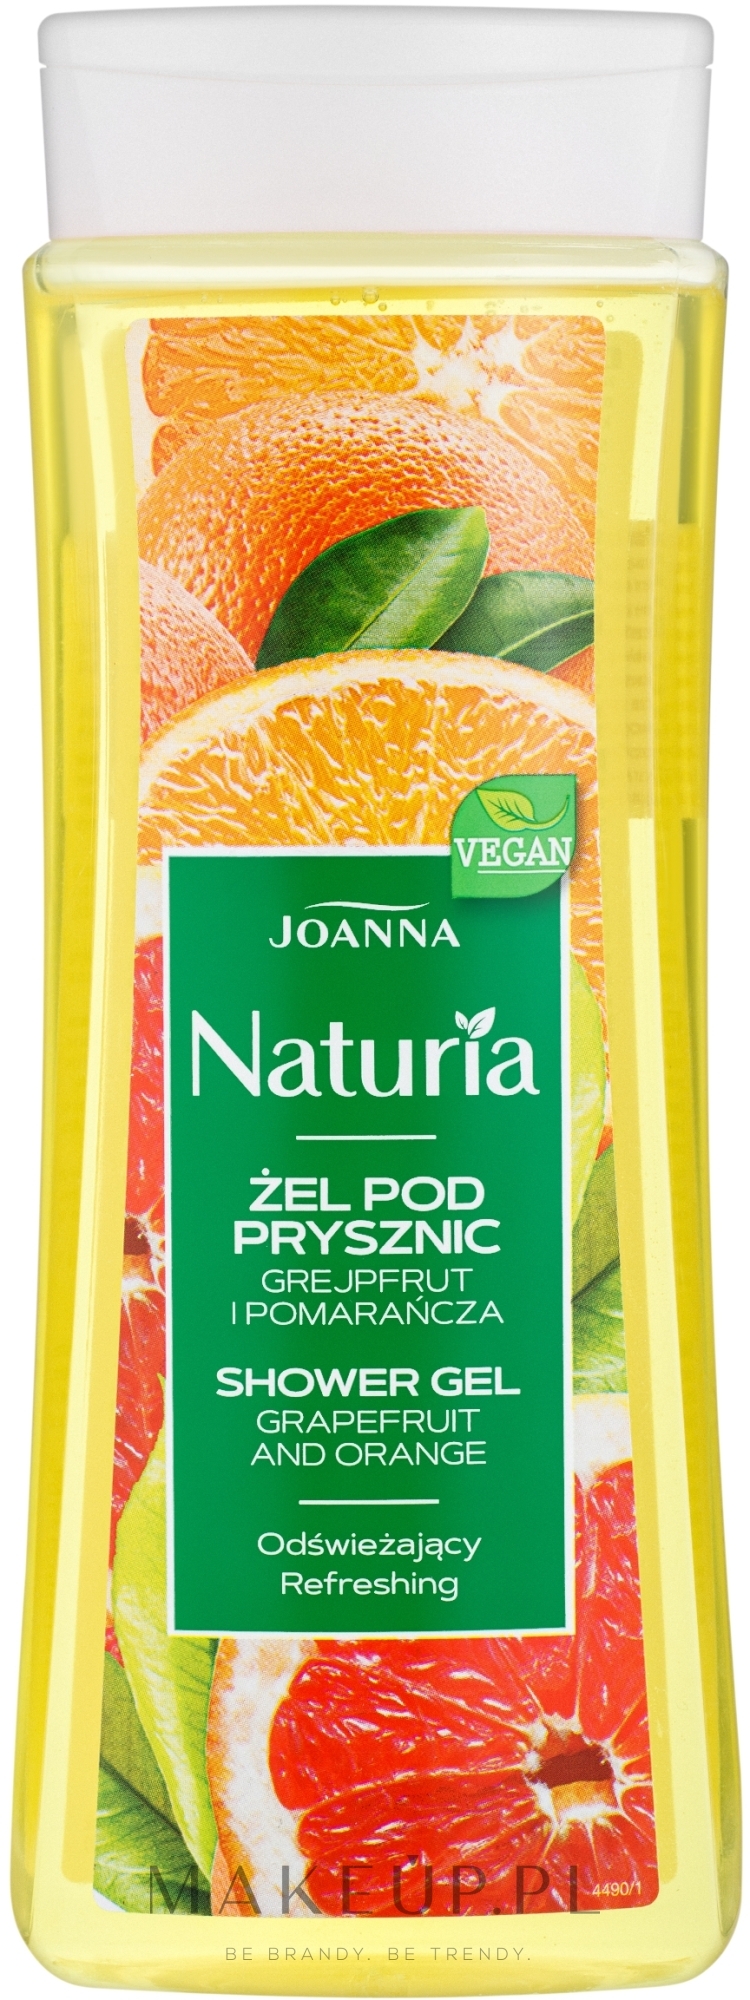 Odświeżający żel pod prysznic Grejpfrut i pomarańcza - Joanna Naturia — Zdjęcie 300 ml